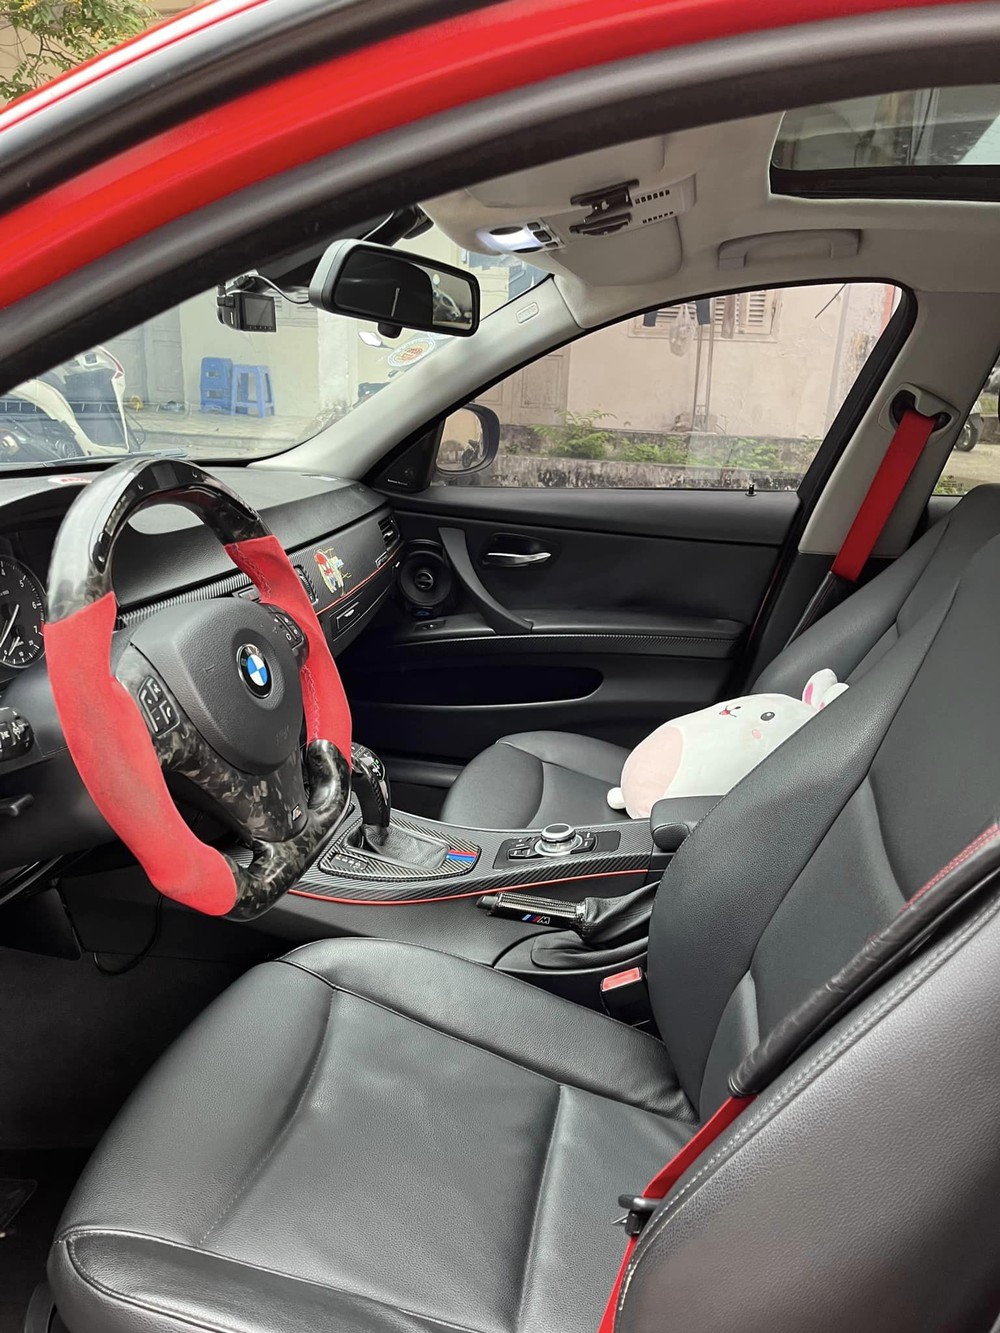 Hết chỗ để xe, Bimmer nổi tiếng Hà Nội bán BMW 320i độ tâm huyết: Giá xe 420 triệu nhưng tiền độ đã hơn 370 triệu đồng - Ảnh 5.